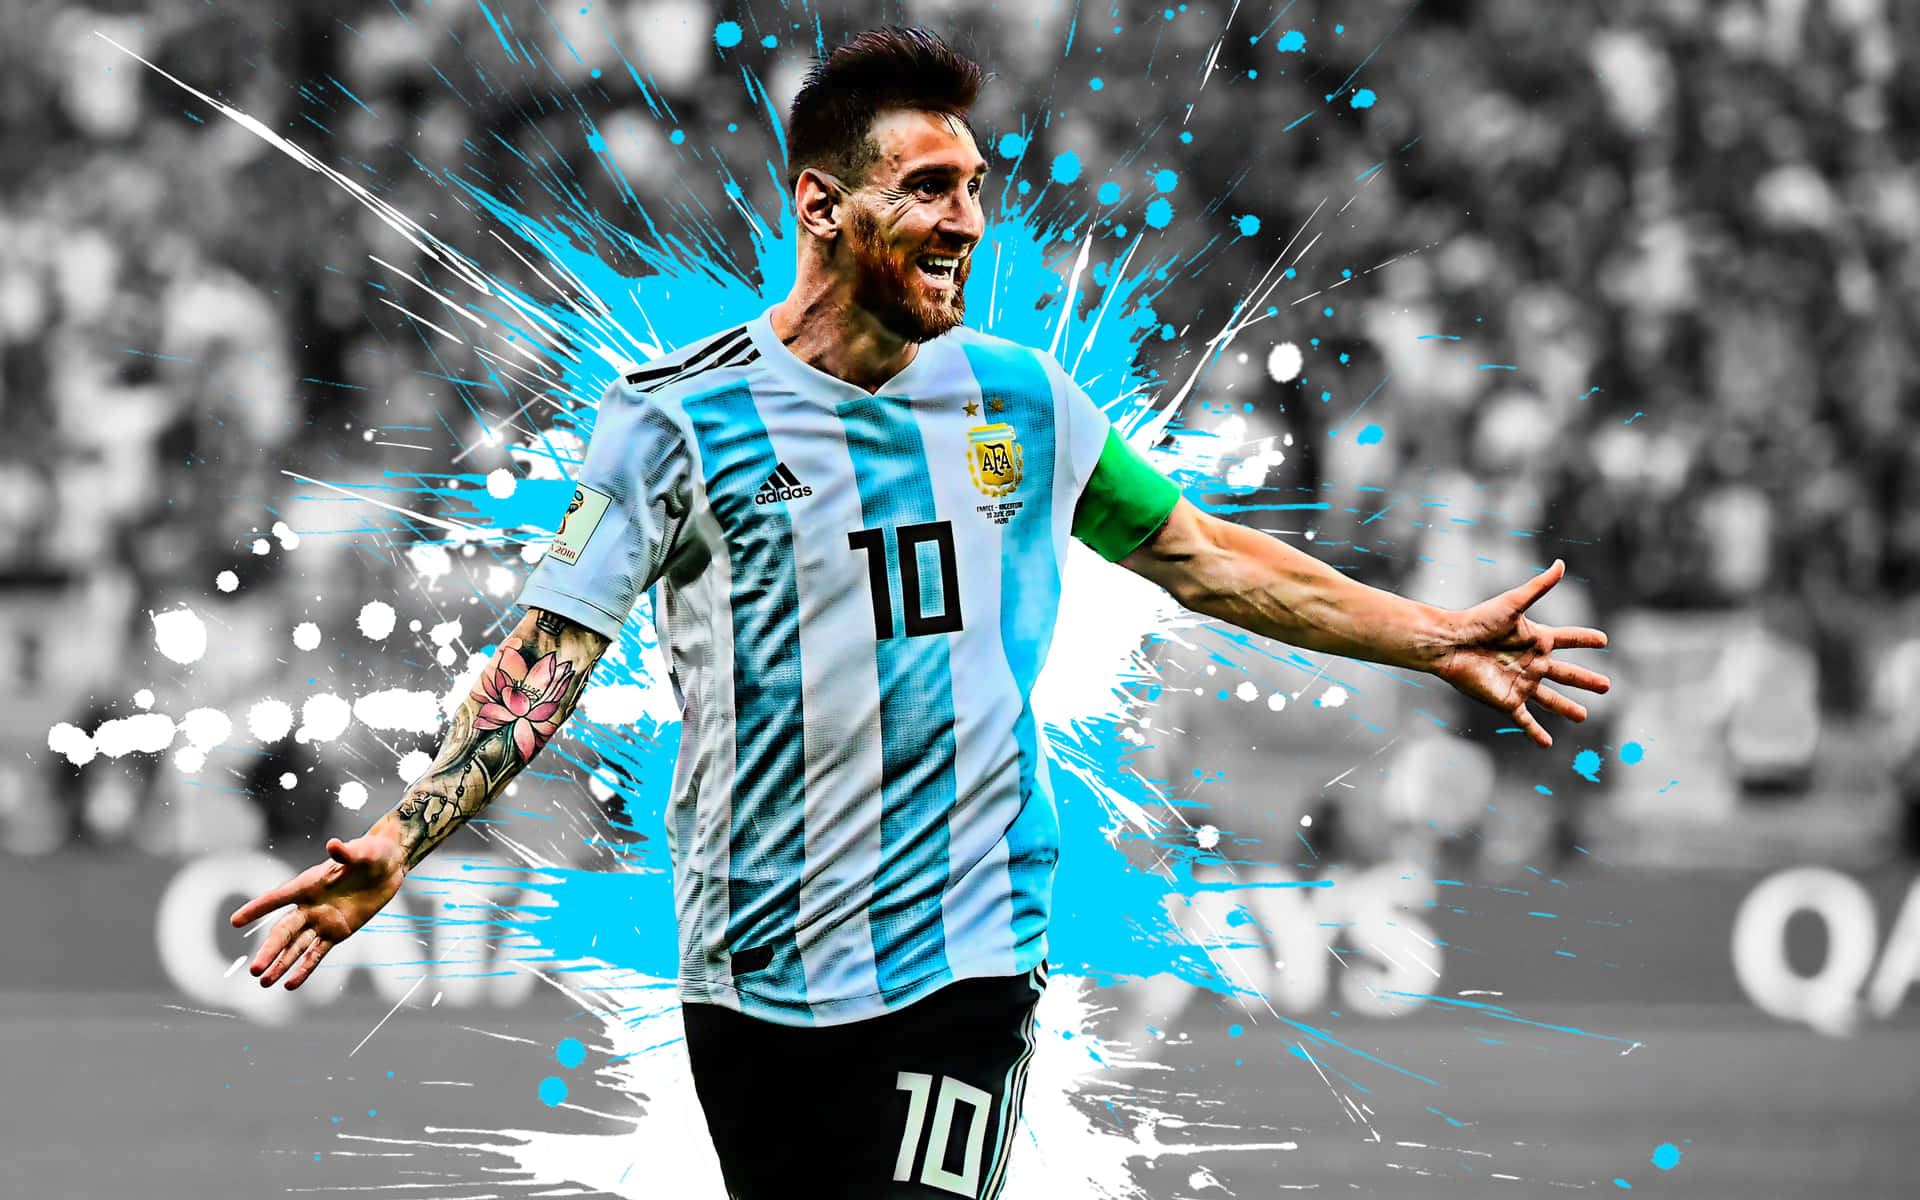 Ikoniskalionel Messi, Välkänd Fotbollsspelare